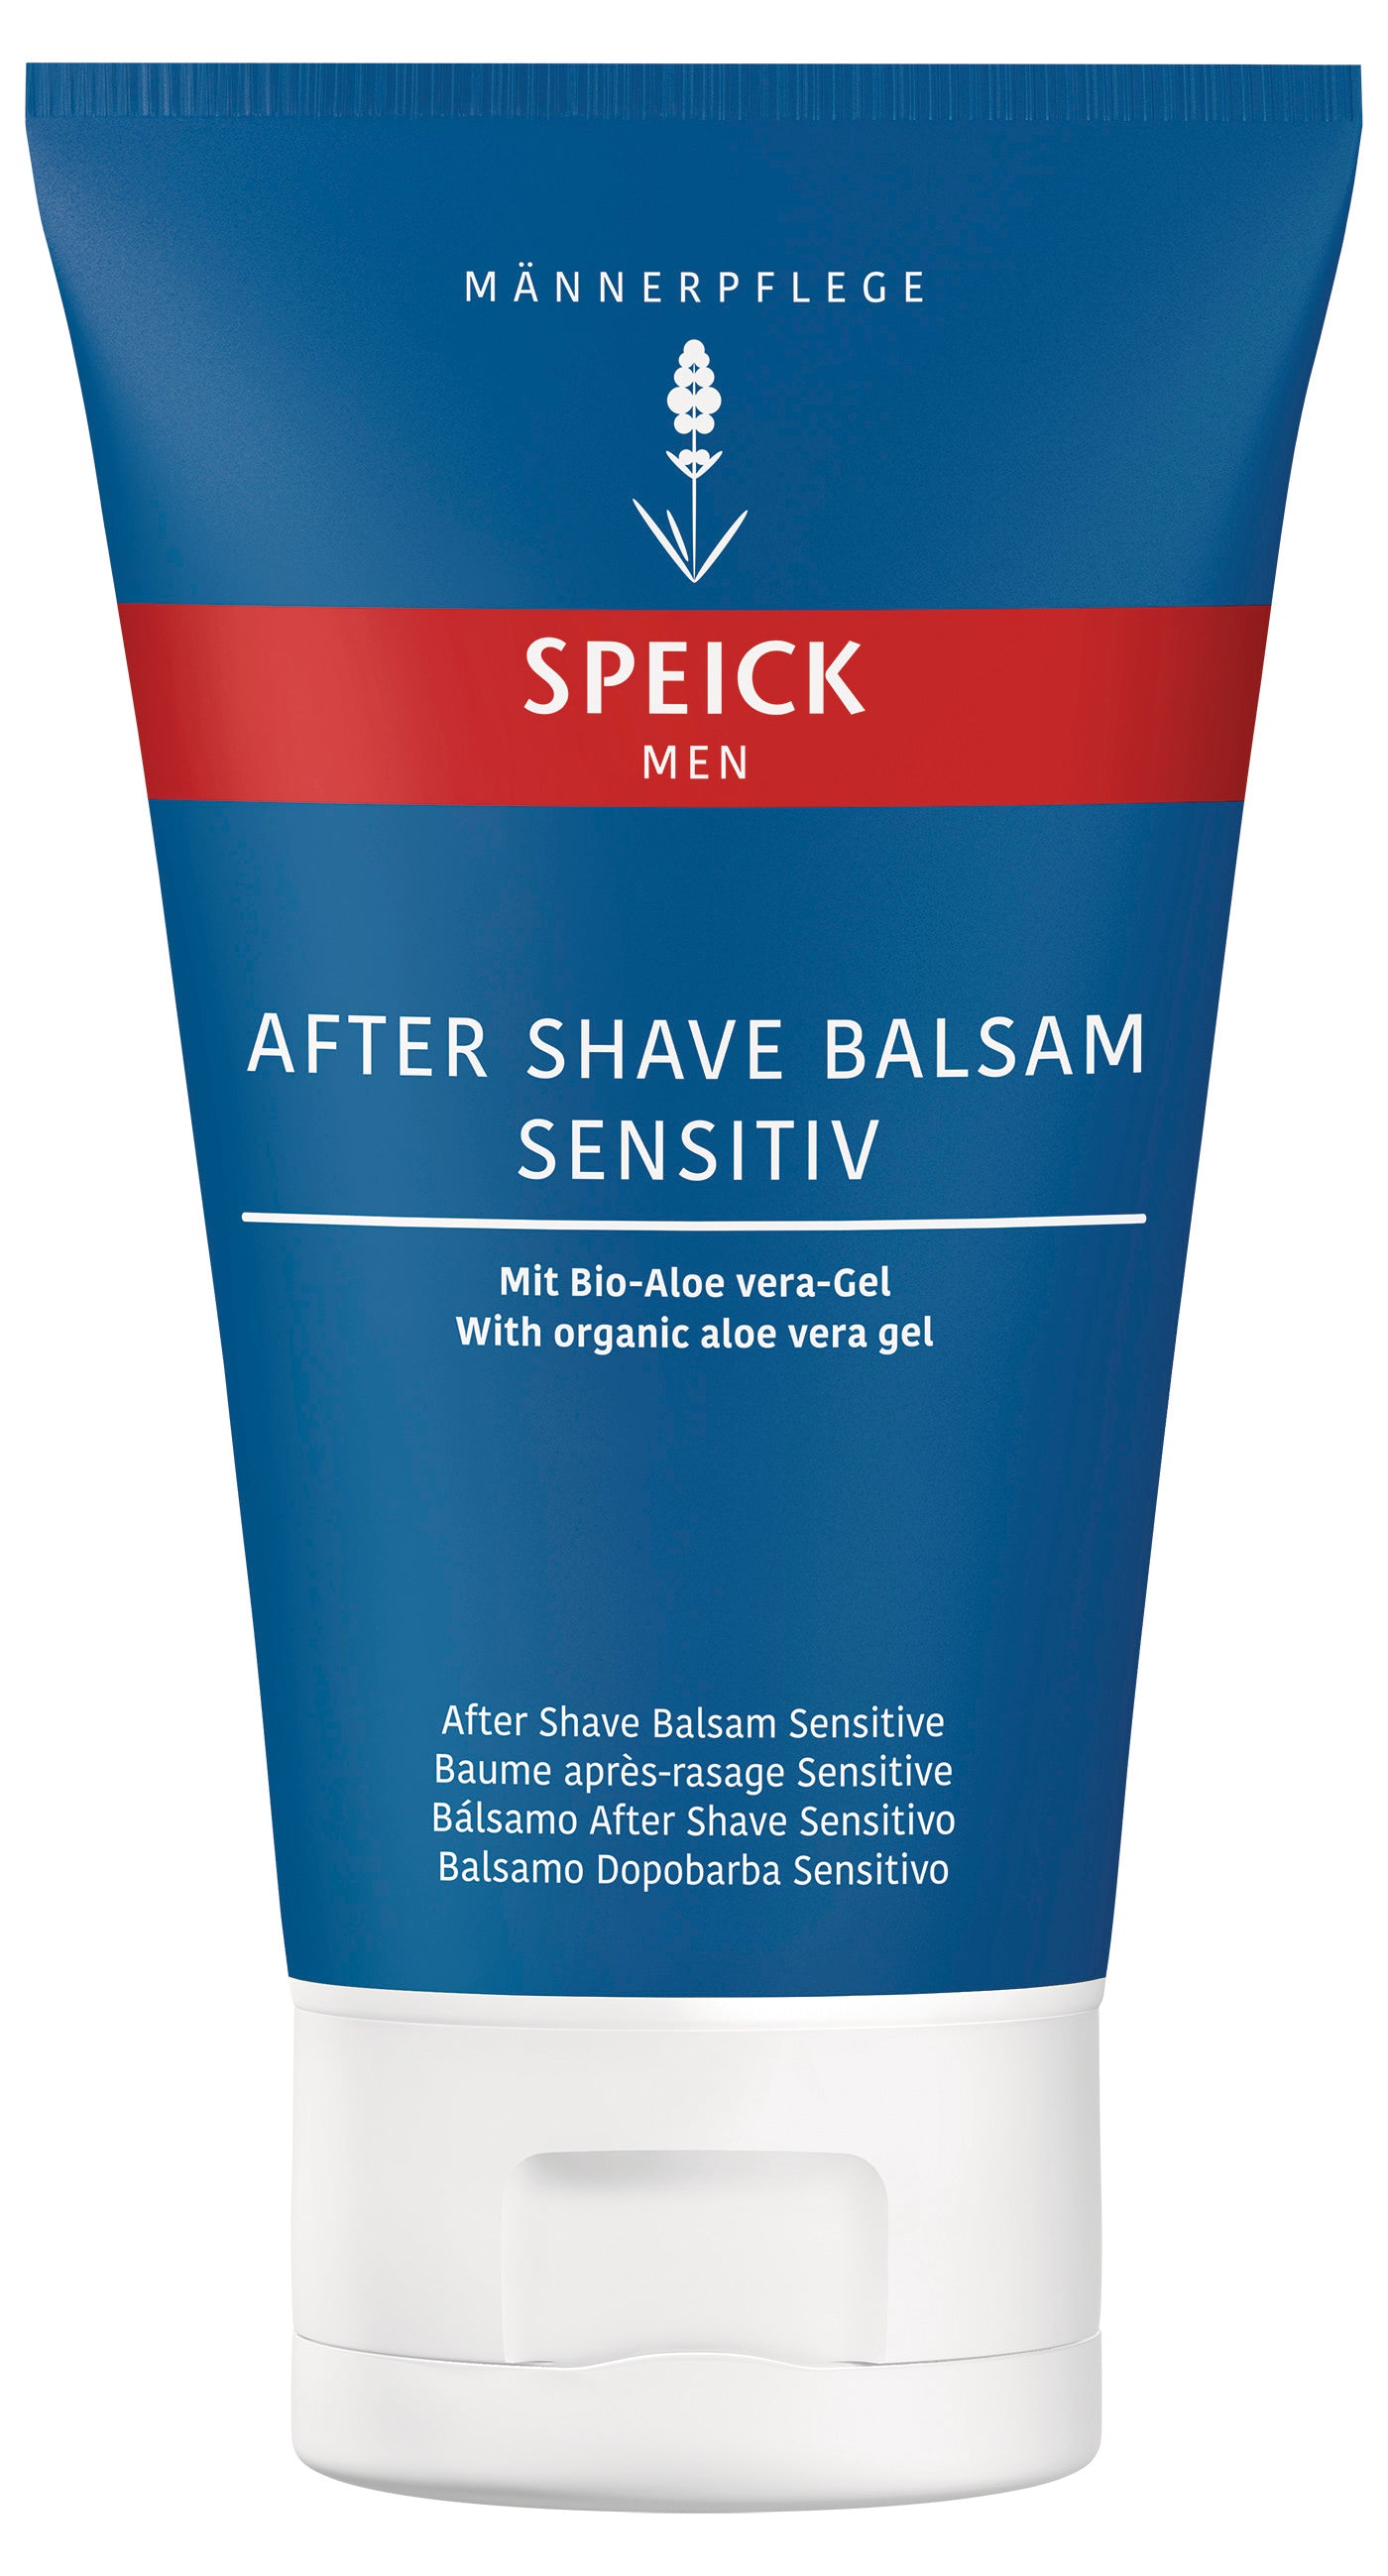 Speick Men After Shave Balsam Sensitiv (100ml)